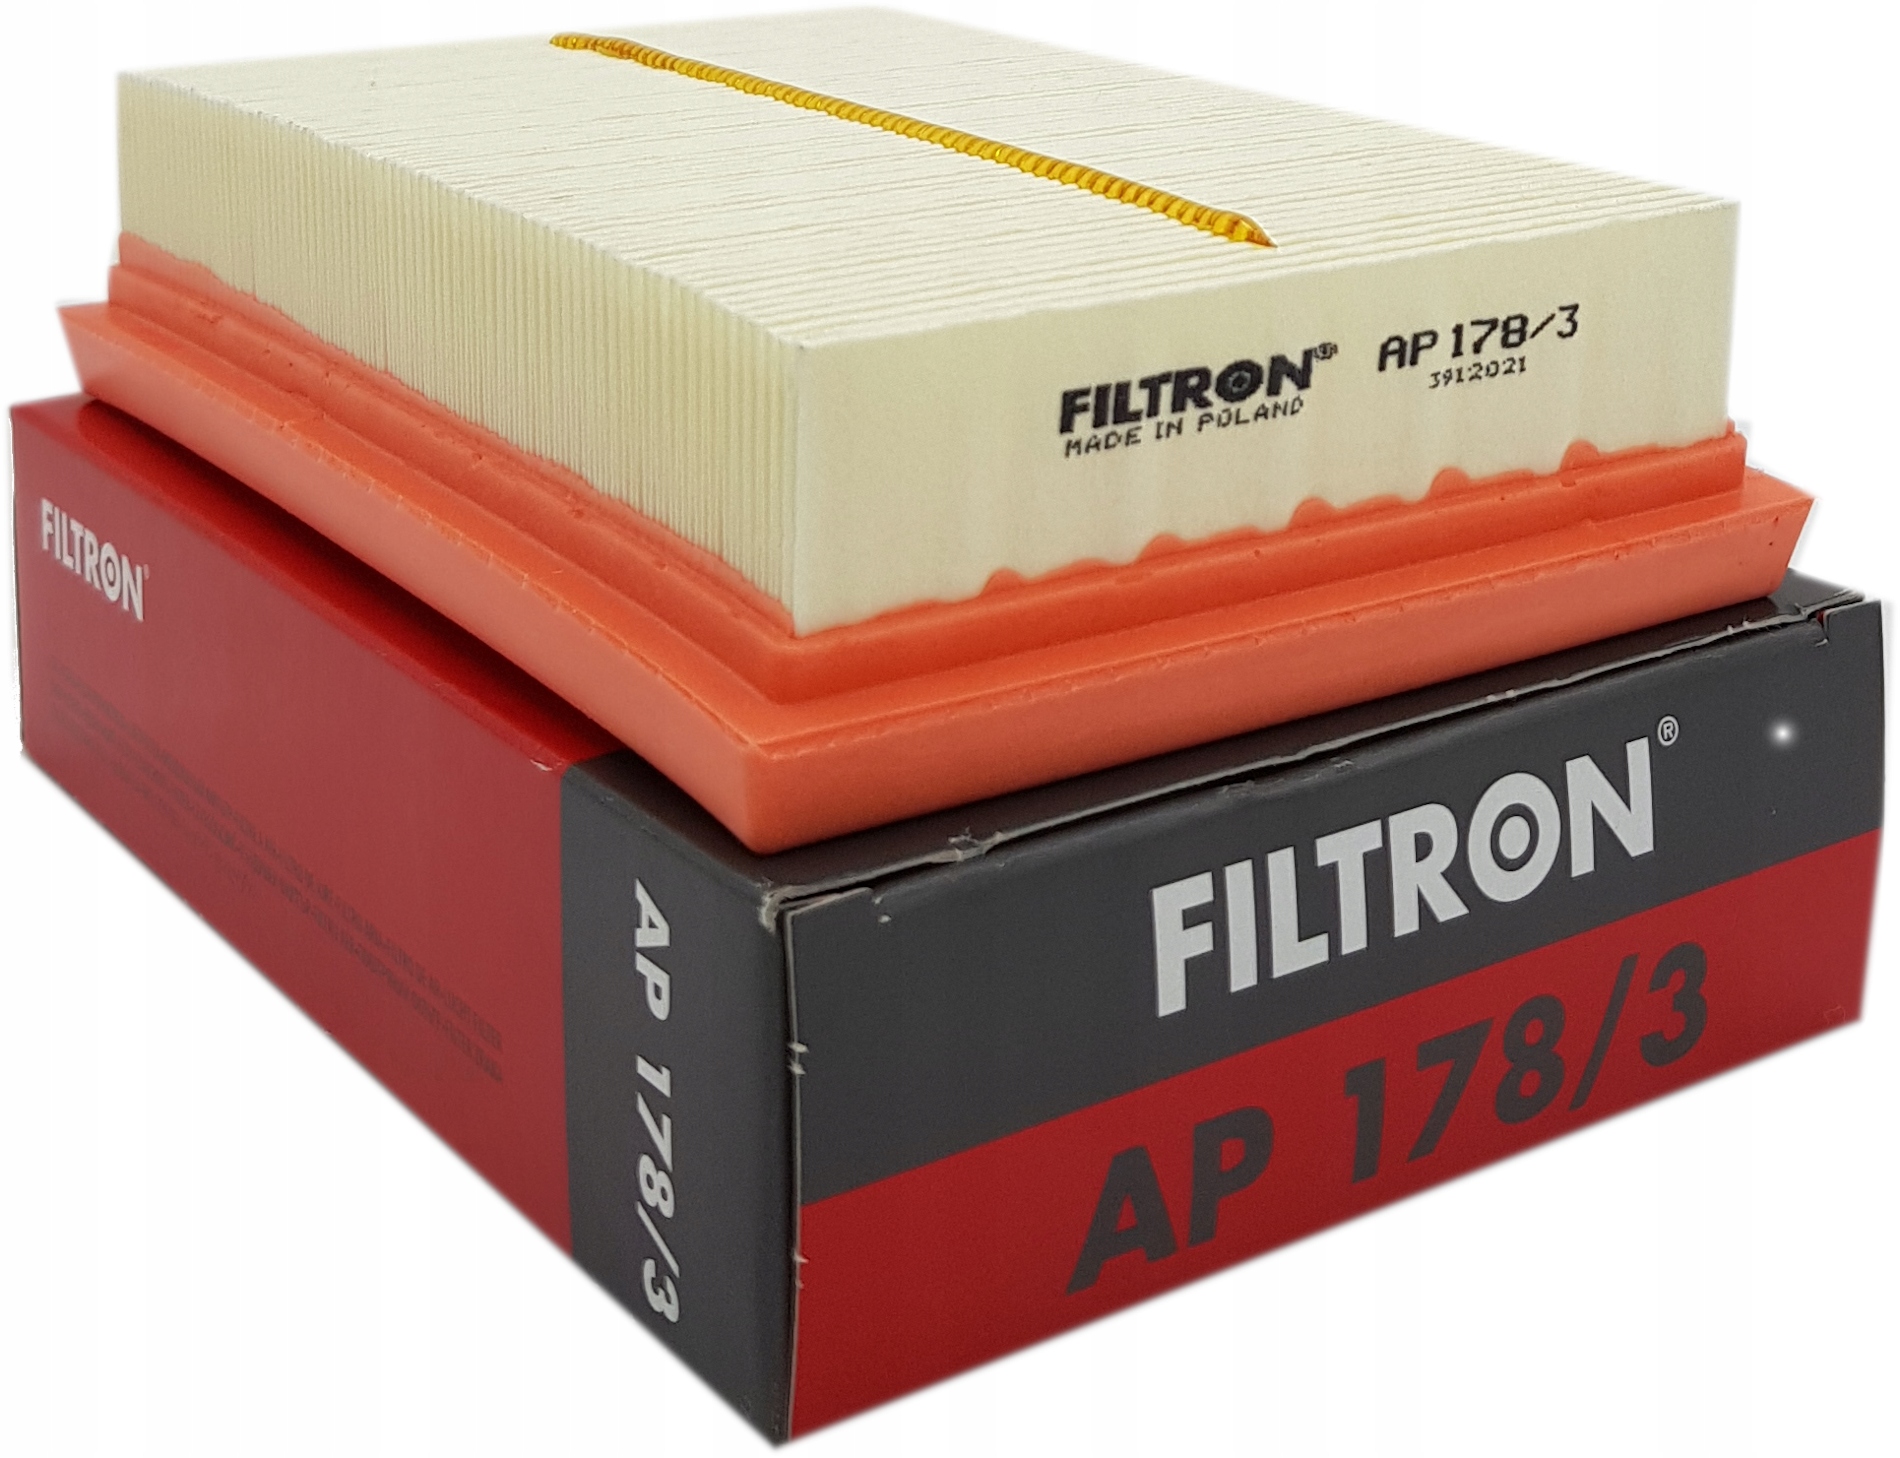 Ap фильтр воздушный. Воздушный фильтр FILTRON ap082/1 drive2. Air Filter ap1330. K1310 FILTRON фильтр салона Toyota Prius/Hilux 15-. FILTRON воздушный фильтр AP 028 купить.